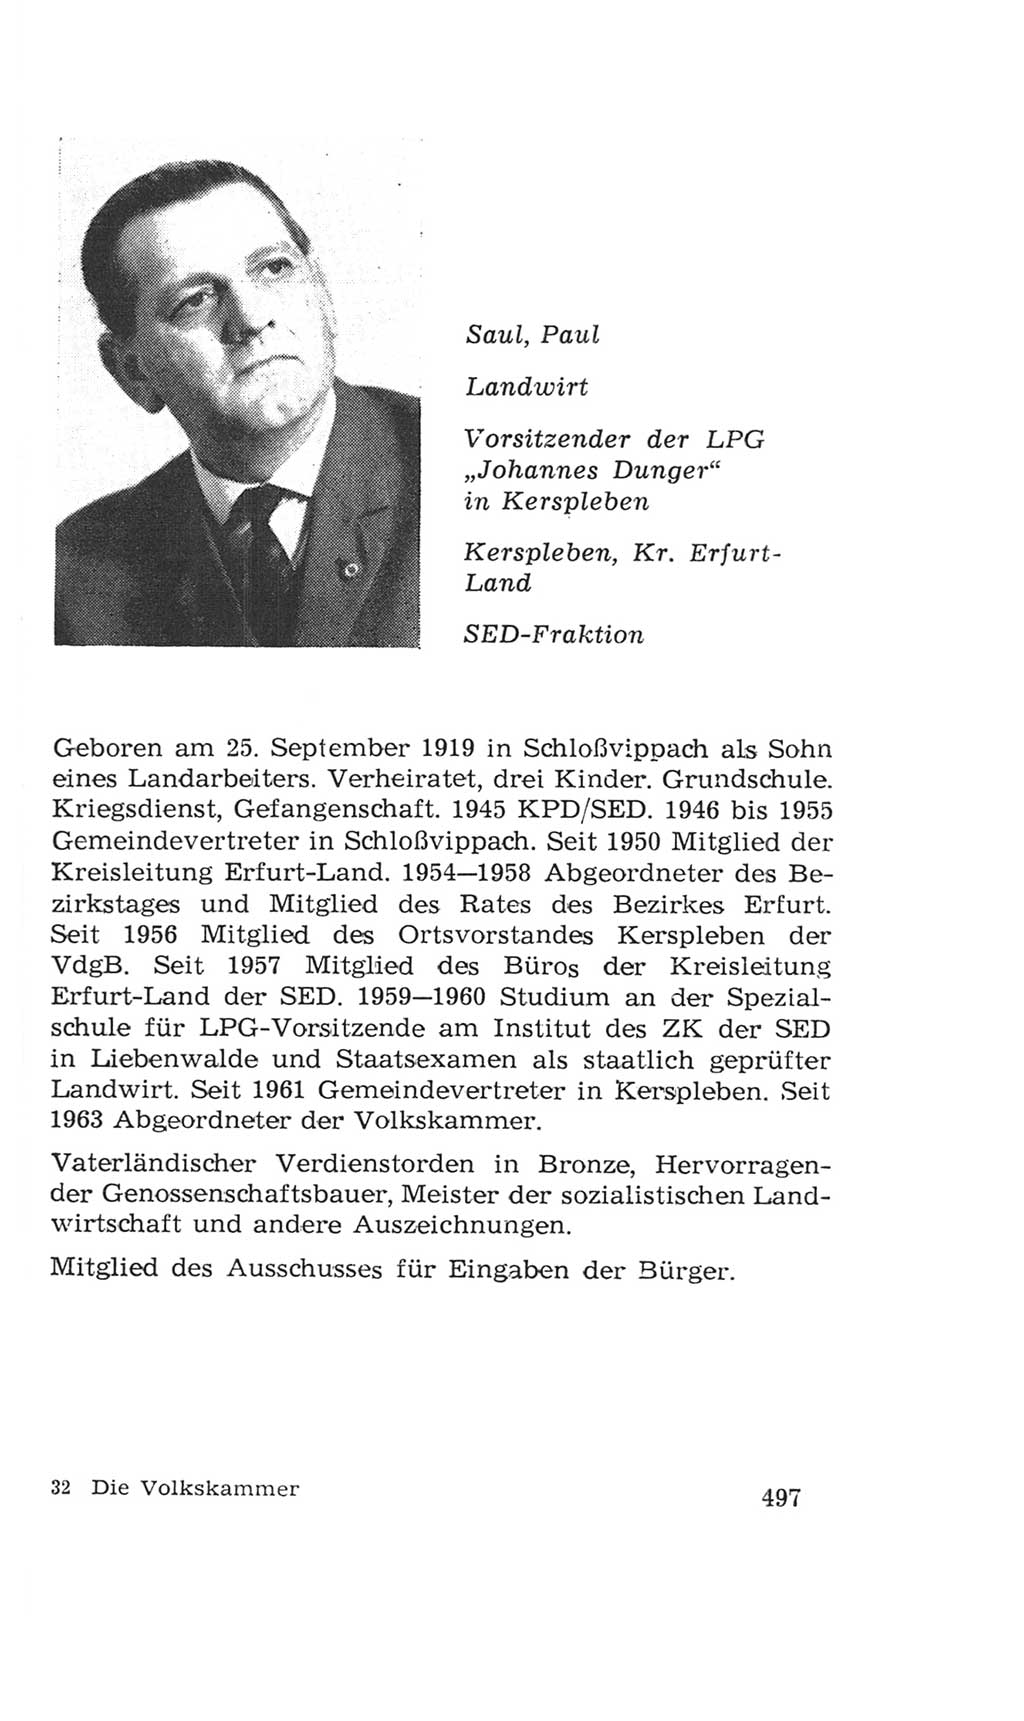 Volkskammer (VK) der Deutschen Demokratischen Republik (DDR), 4. Wahlperiode 1963-1967, Seite 497 (VK. DDR 4. WP. 1963-1967, S. 497)